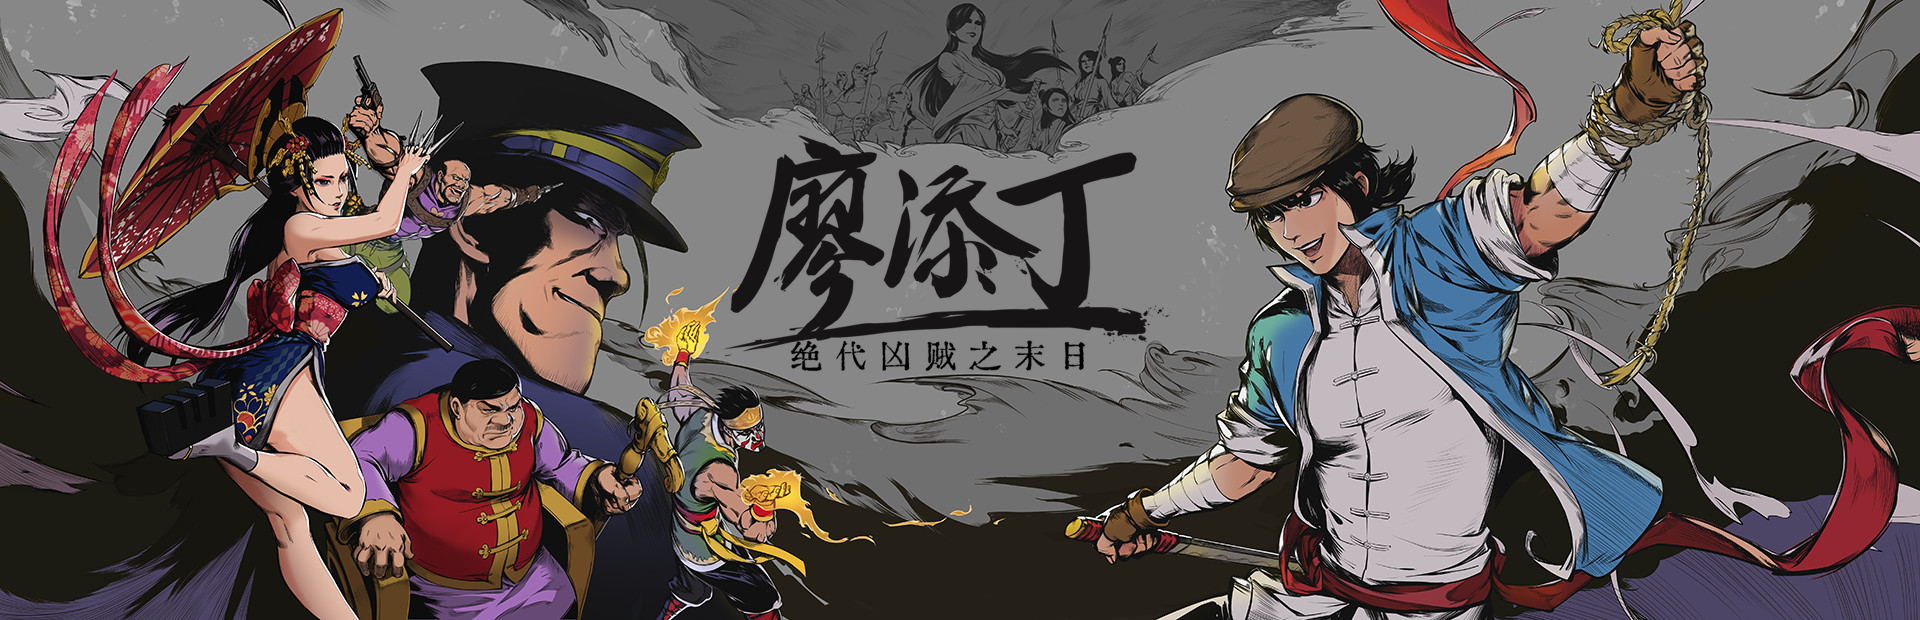 دانلود بازی The Legend of Tianding برای پی سی | گیمباتو